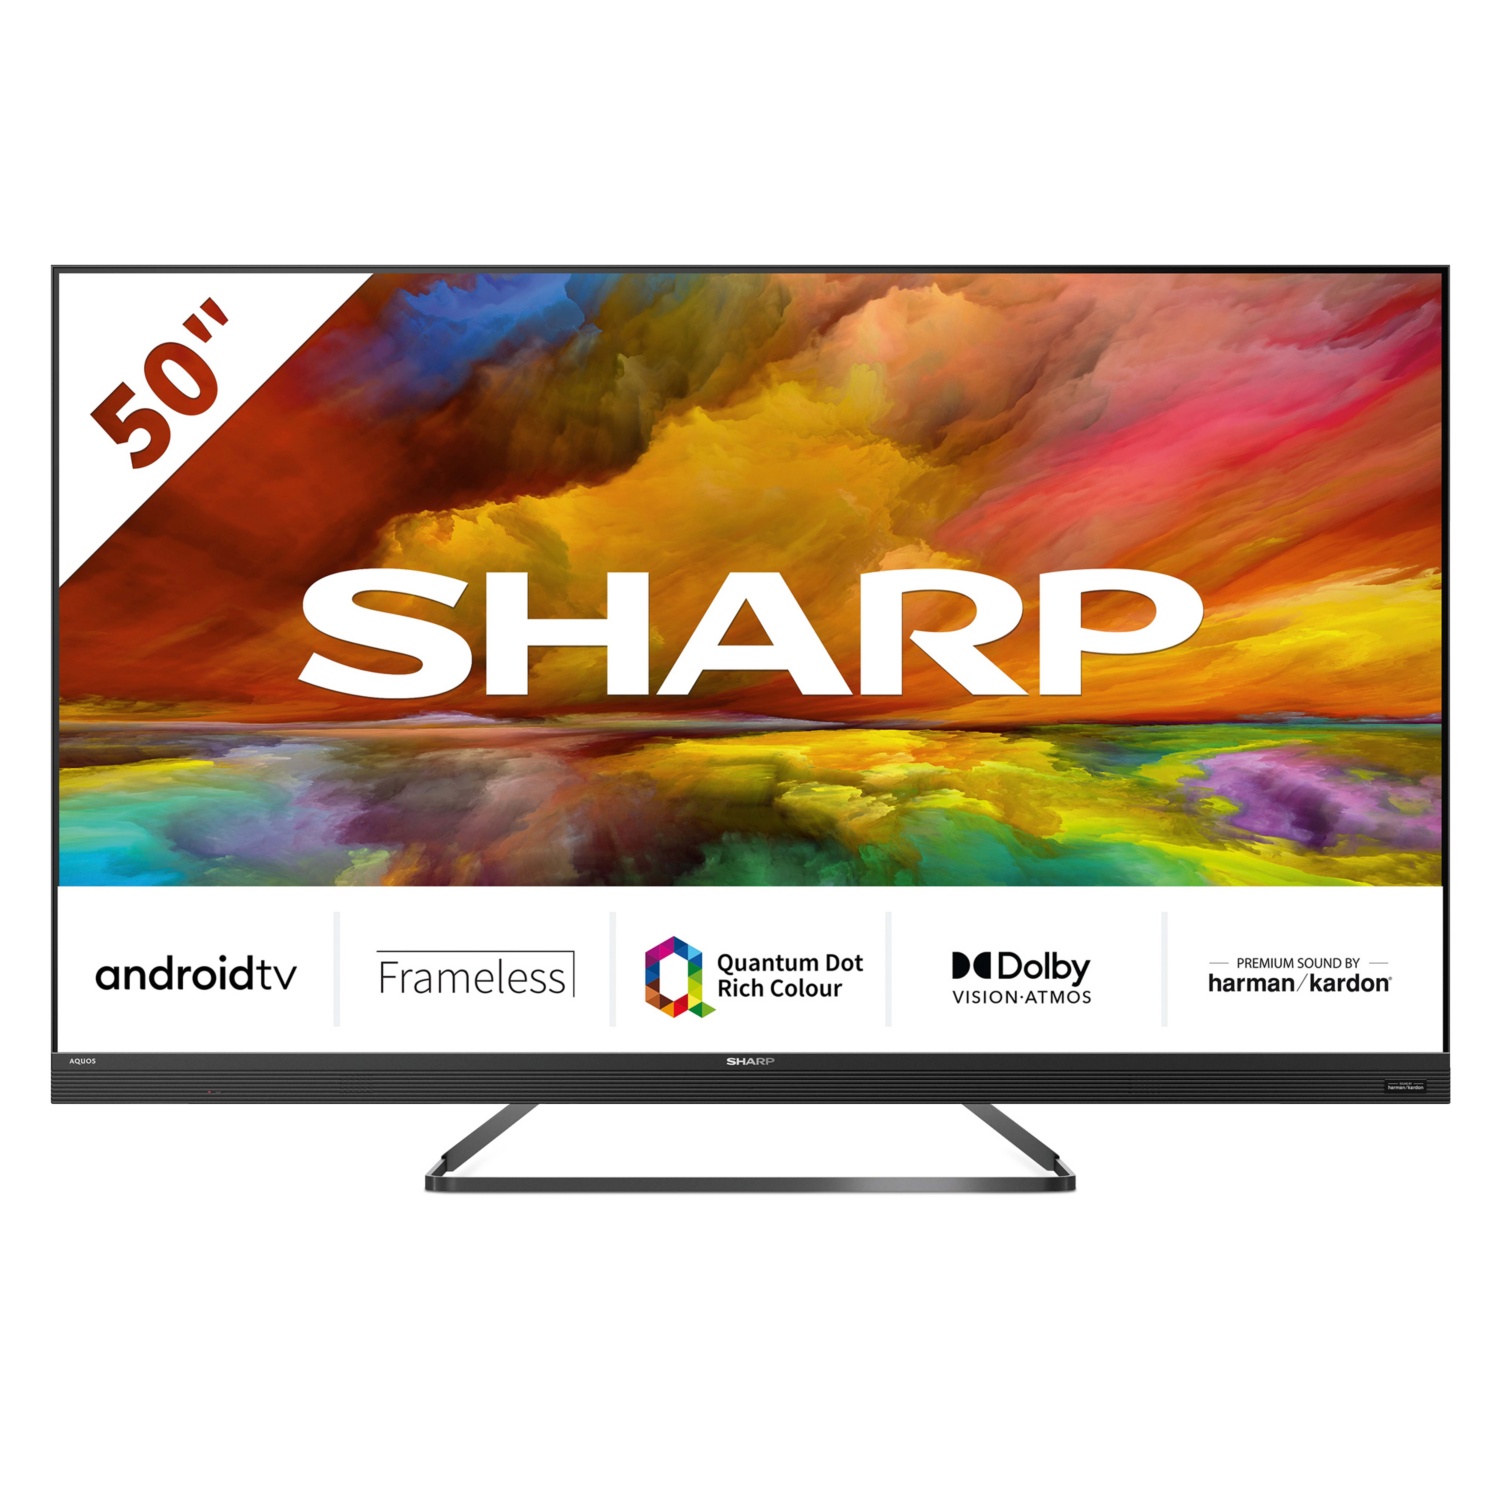 SHARP Ultra HD Quantum Dot Android Smart-TV 50“ (126 cm) EQ3EA